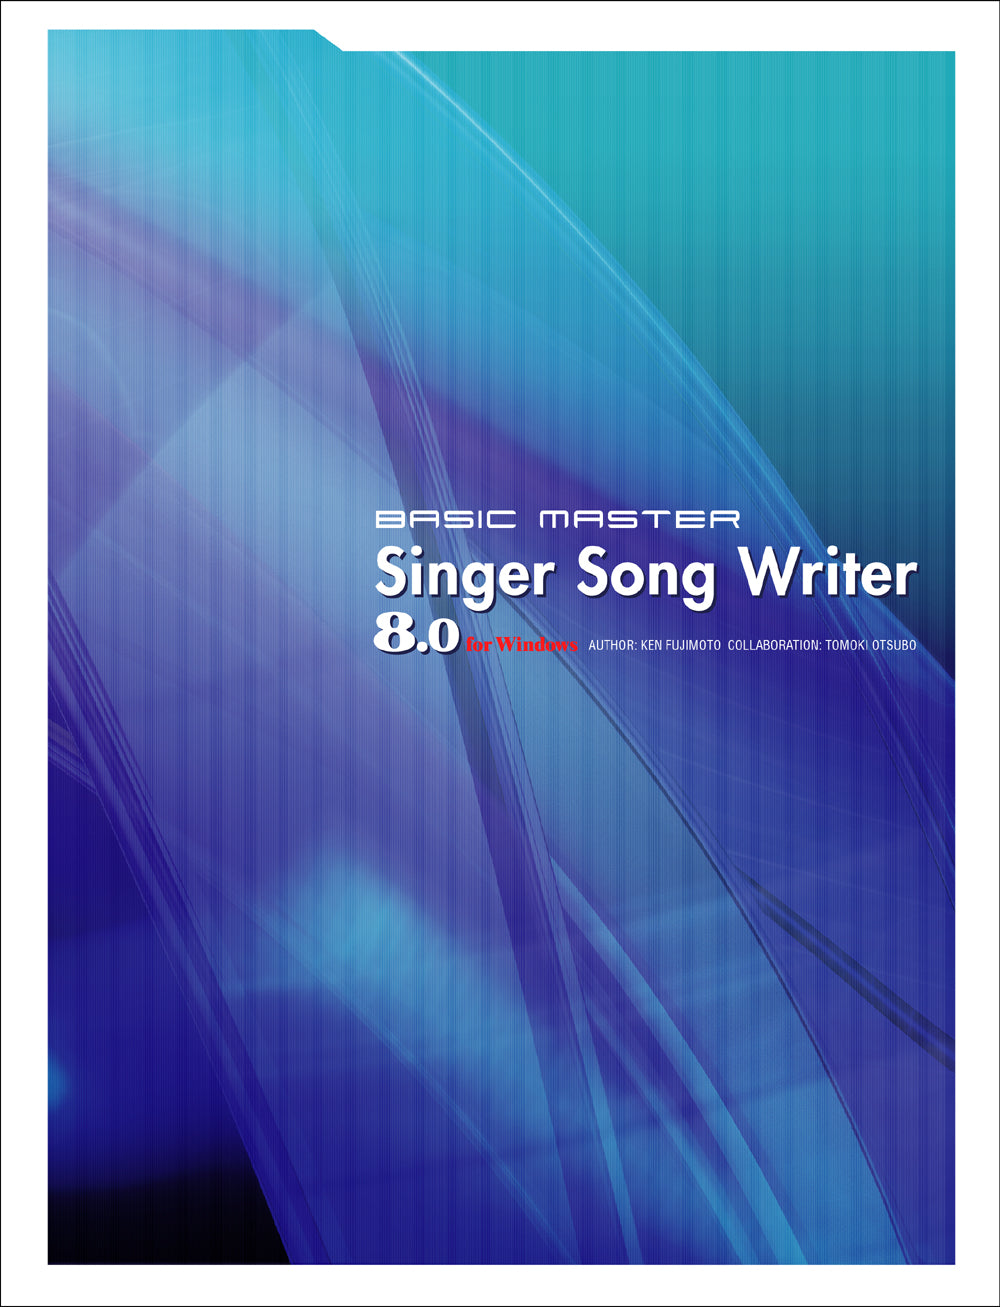 Basic Master Singer Song Writer 8.0 | 株式会社ビー・エヌ・エヌ